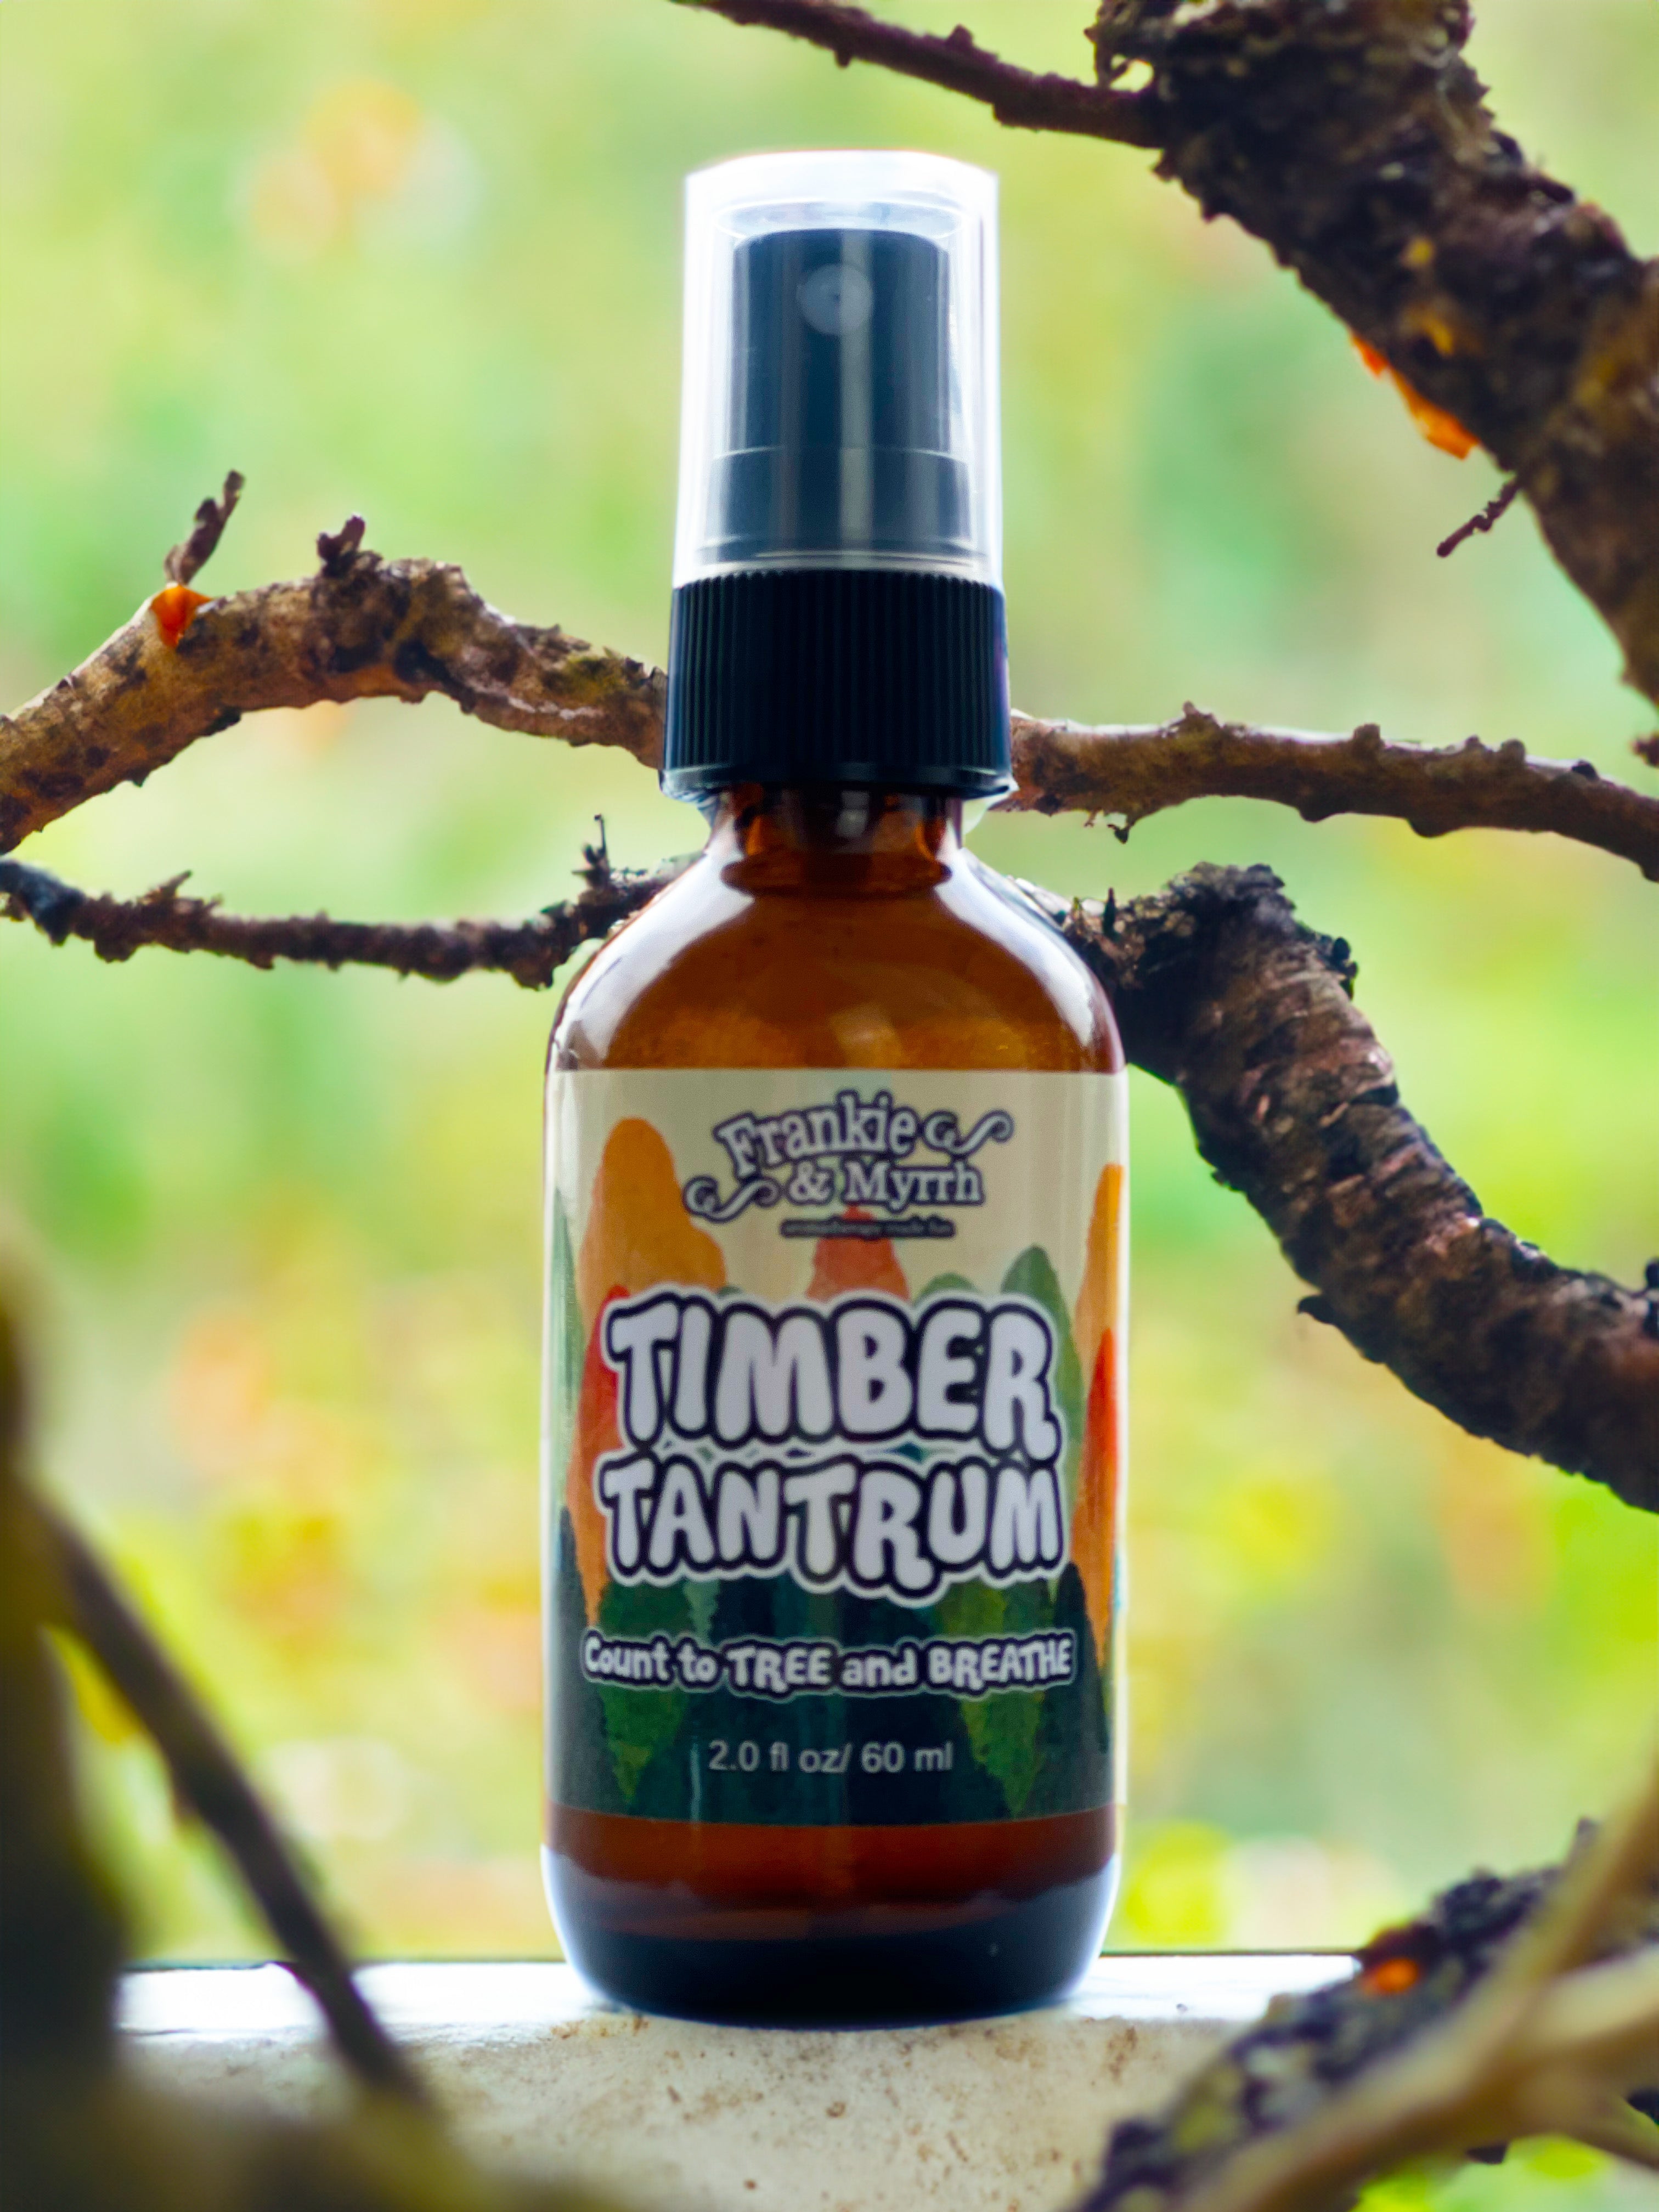 Timber Tantrum | Cedar Spruce Fir Spray